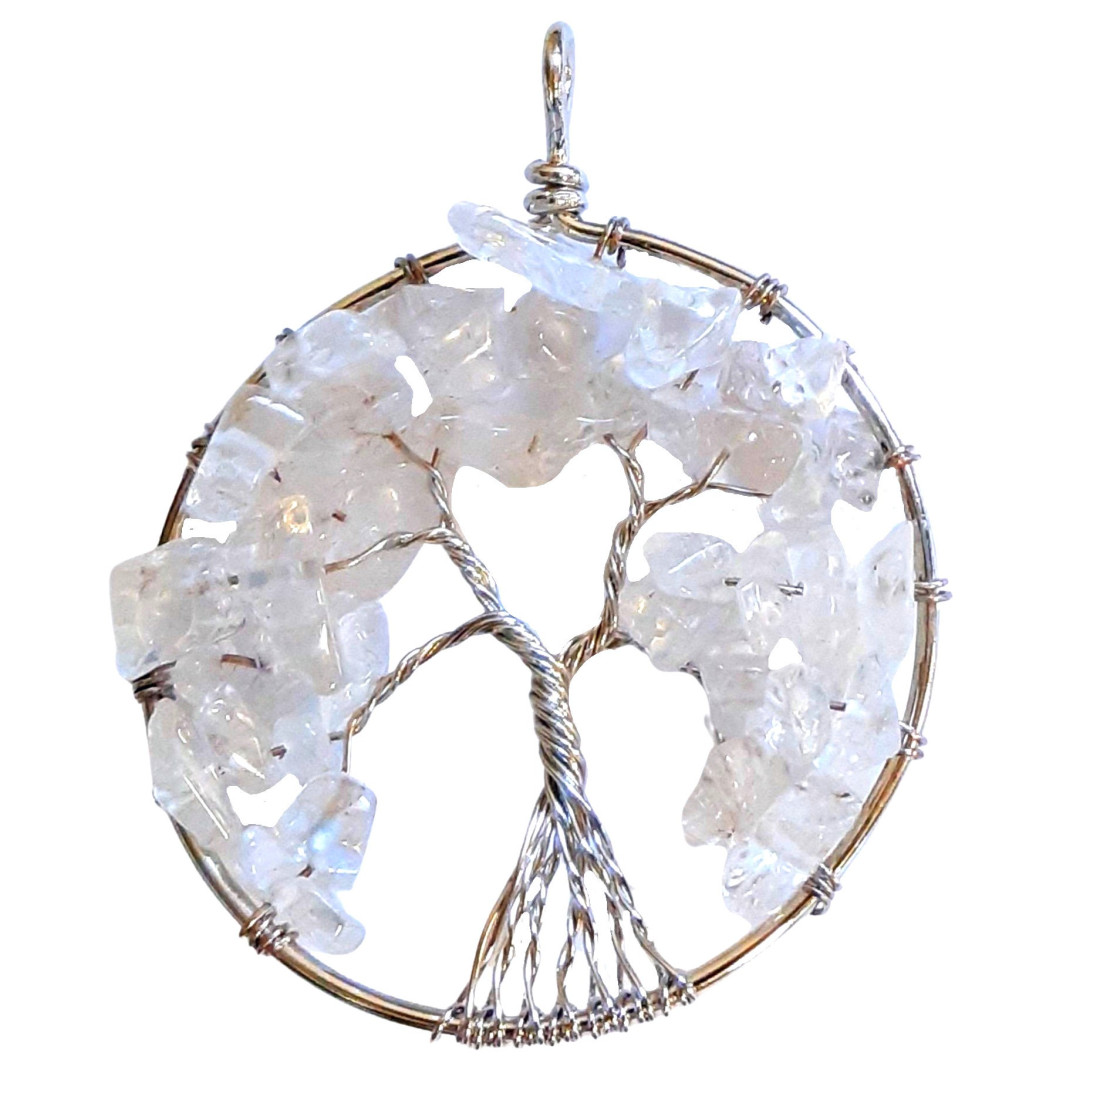 Grand Pendentif médaille arbre de vie en cristal de roche + chaine